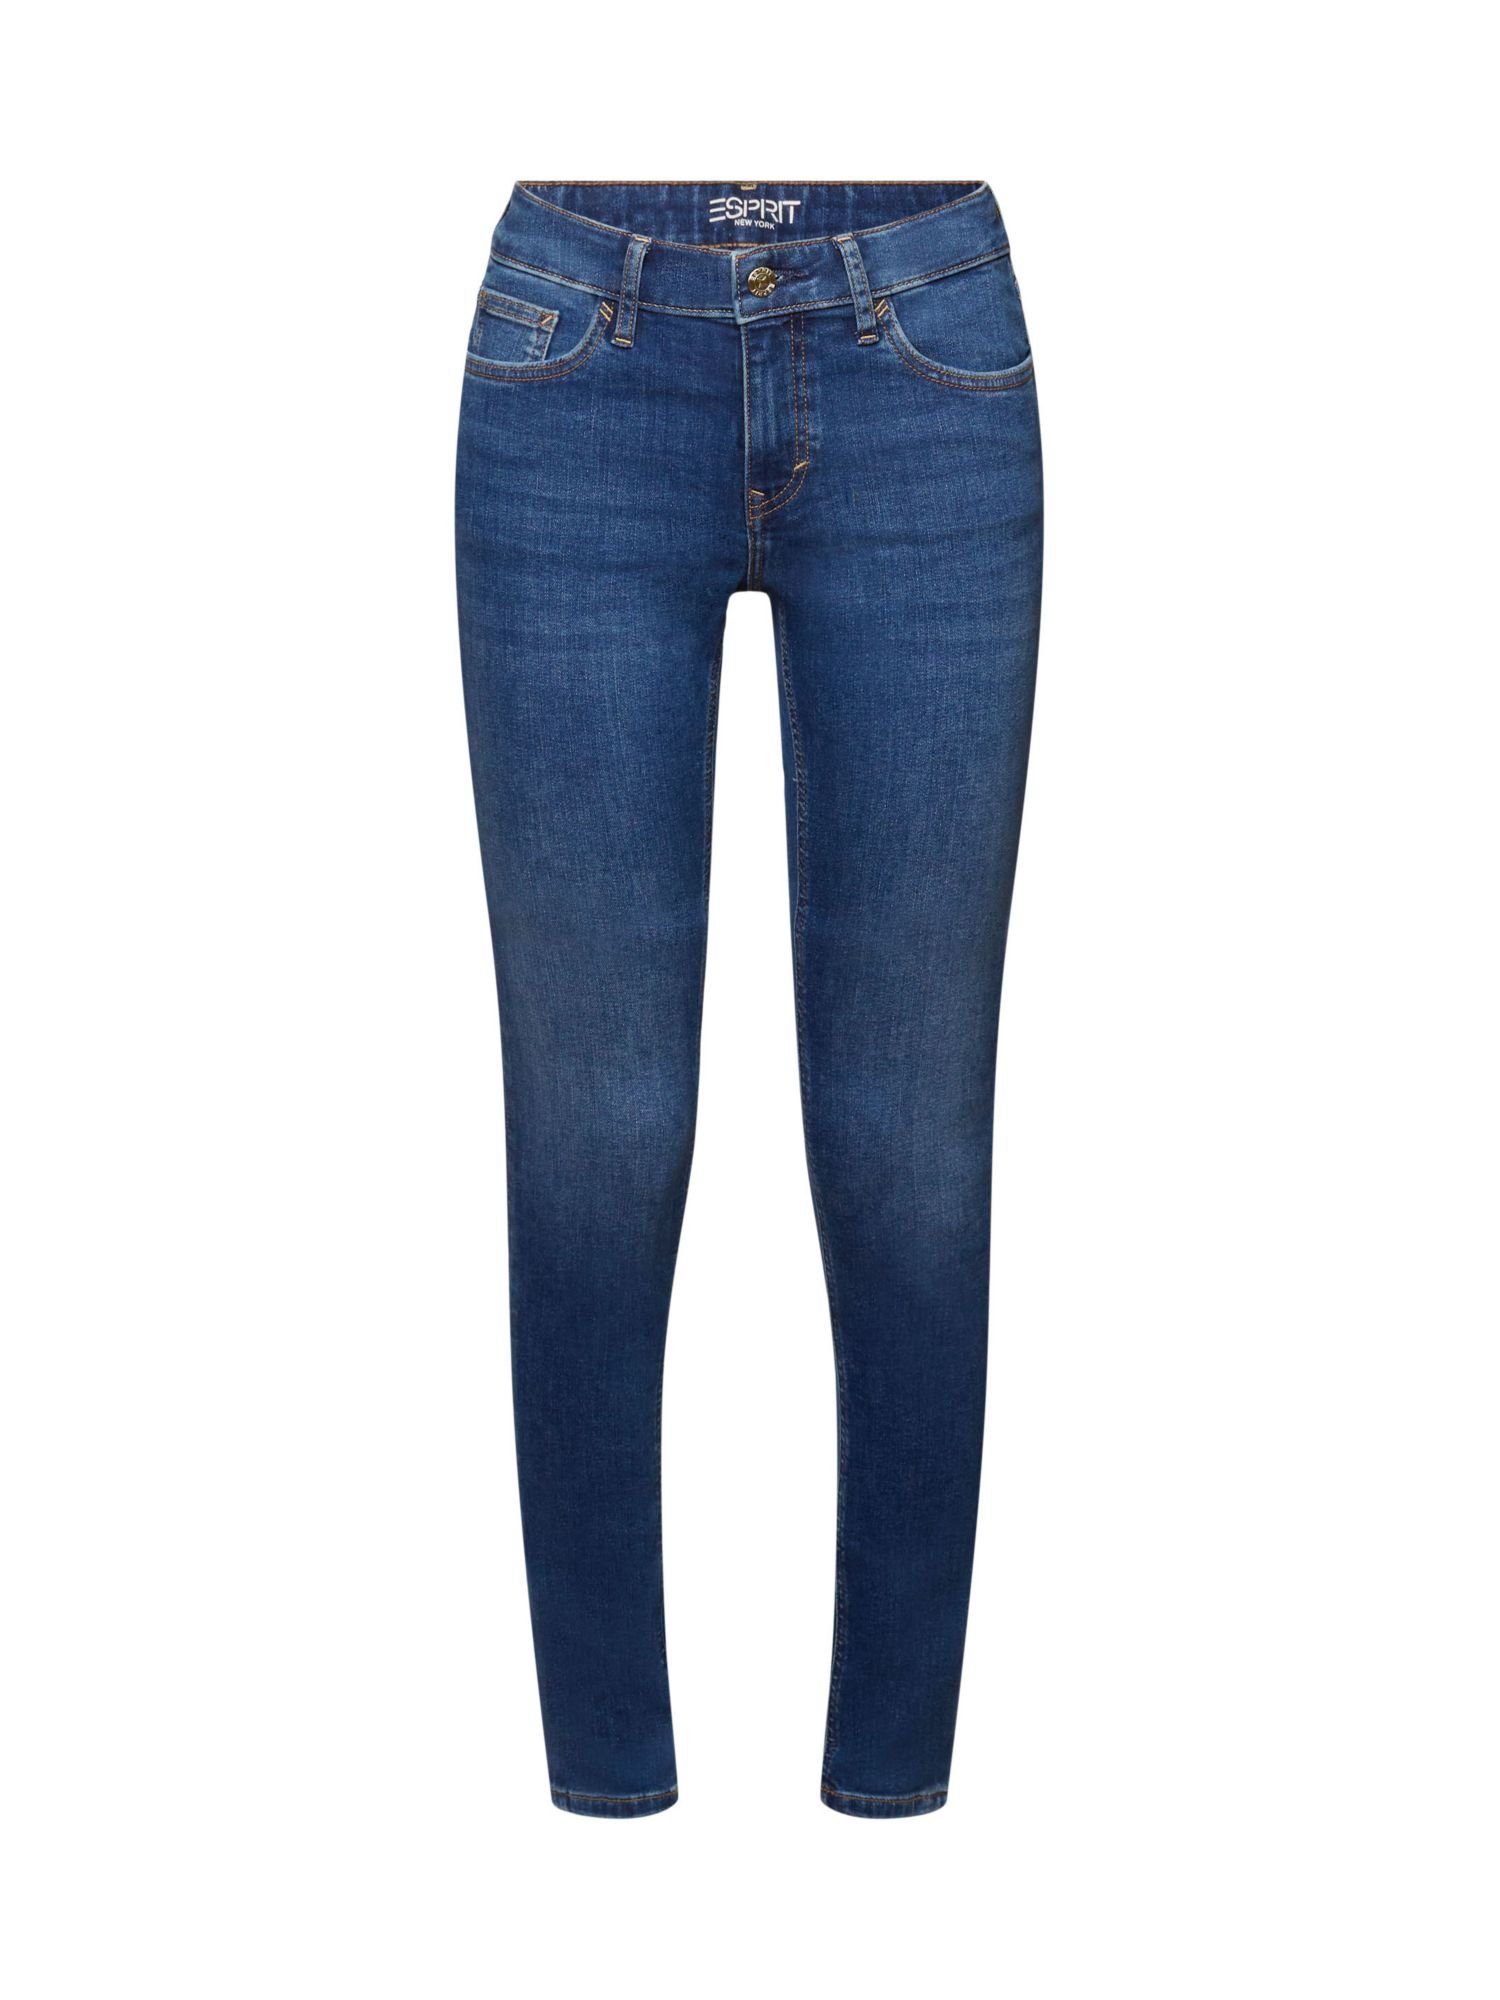 Esprit Skinny-fit-Jeans Skinny Jeans mit mittlerer Bundhöhe, Bund mit  Gürtelschlaufen, Knopf und Frontzipper